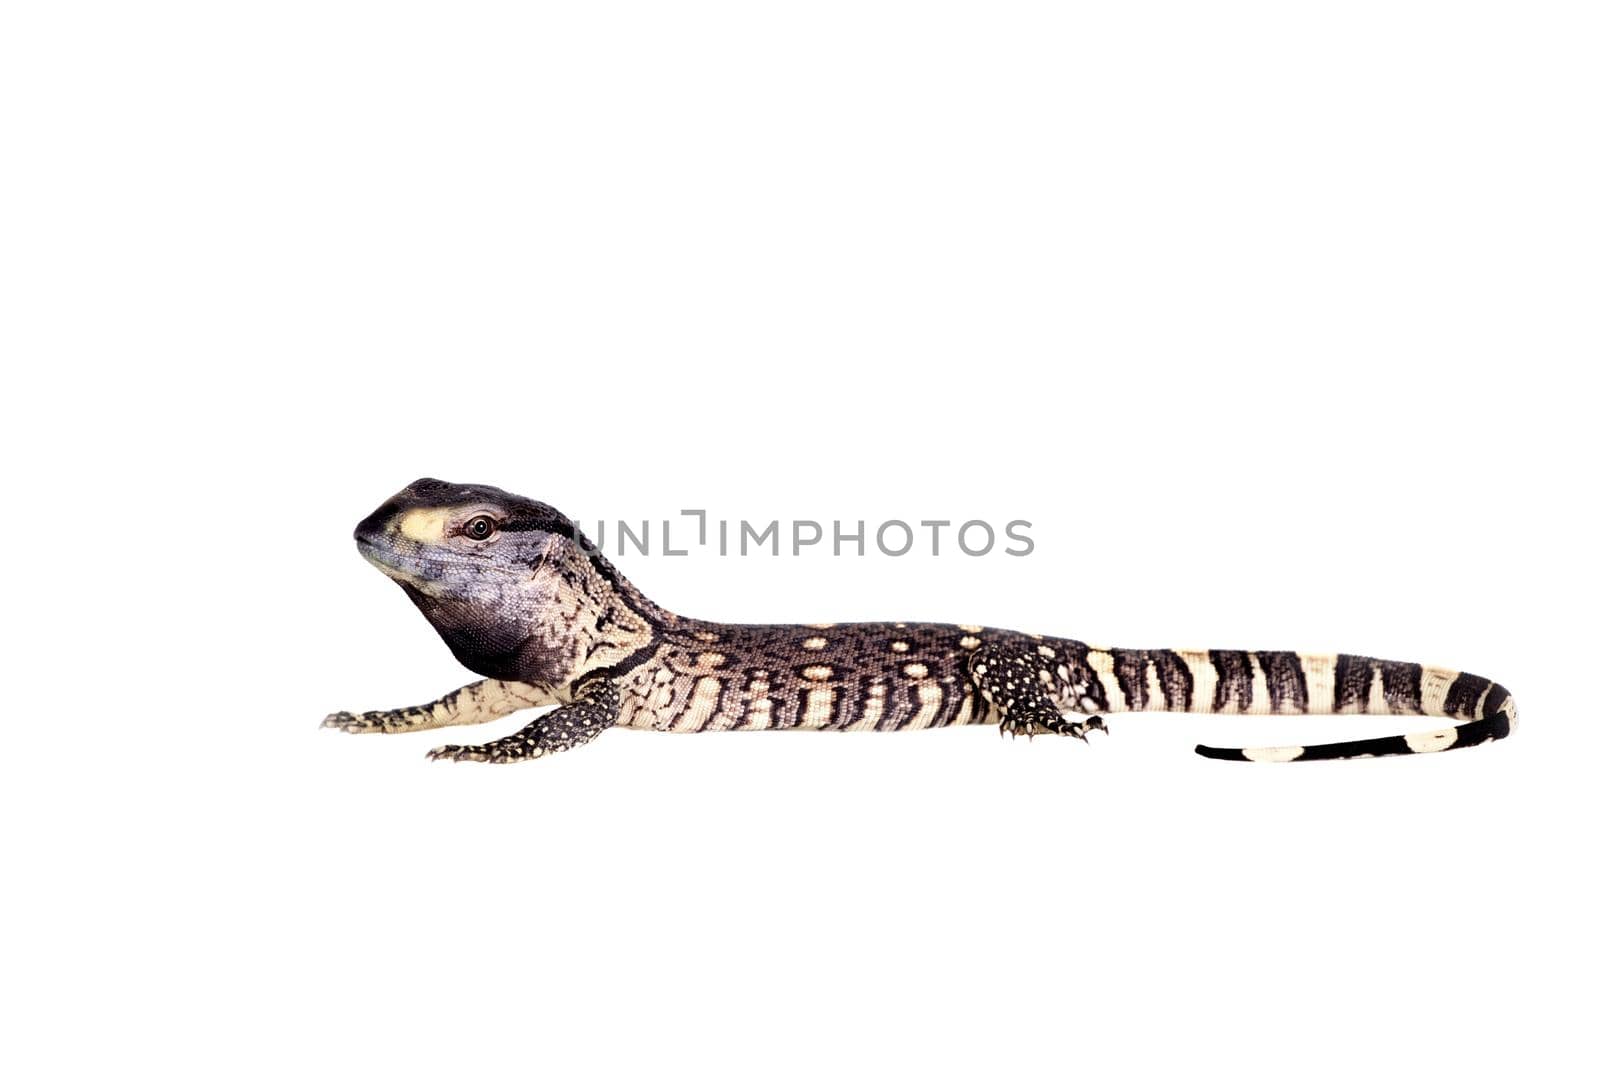 Newborn Black Throat Monitor Lizard, Varanus albigularis, isolated on white background